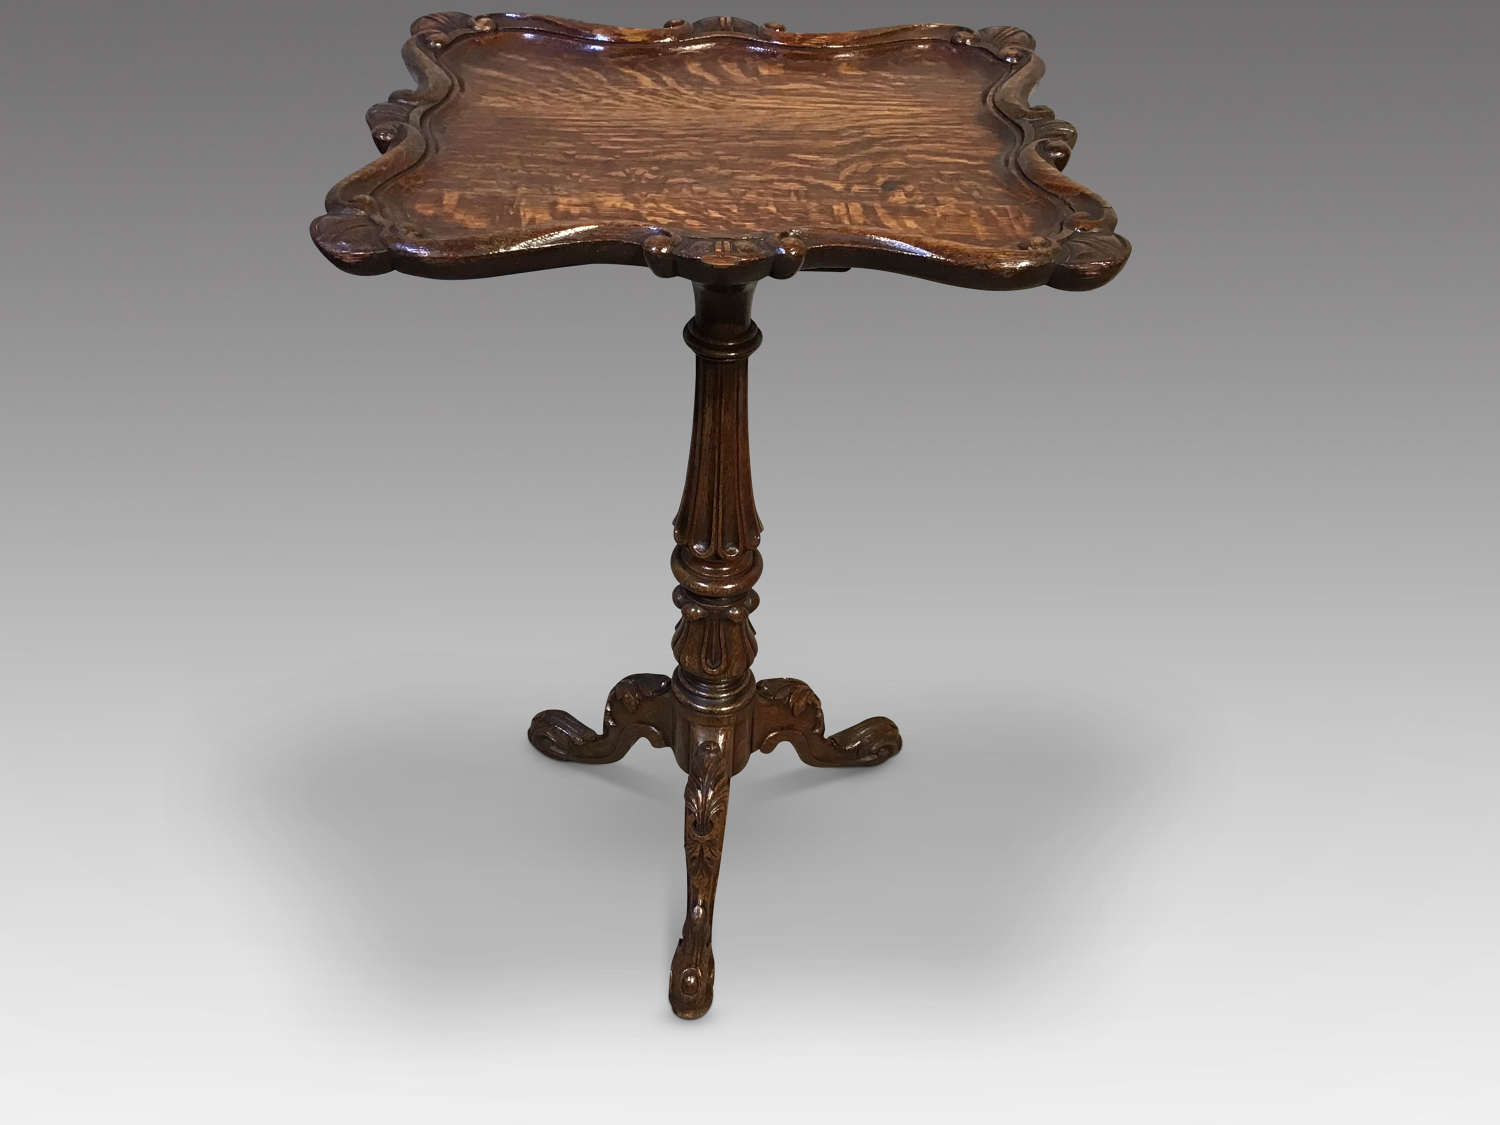 Antique regency tripod table